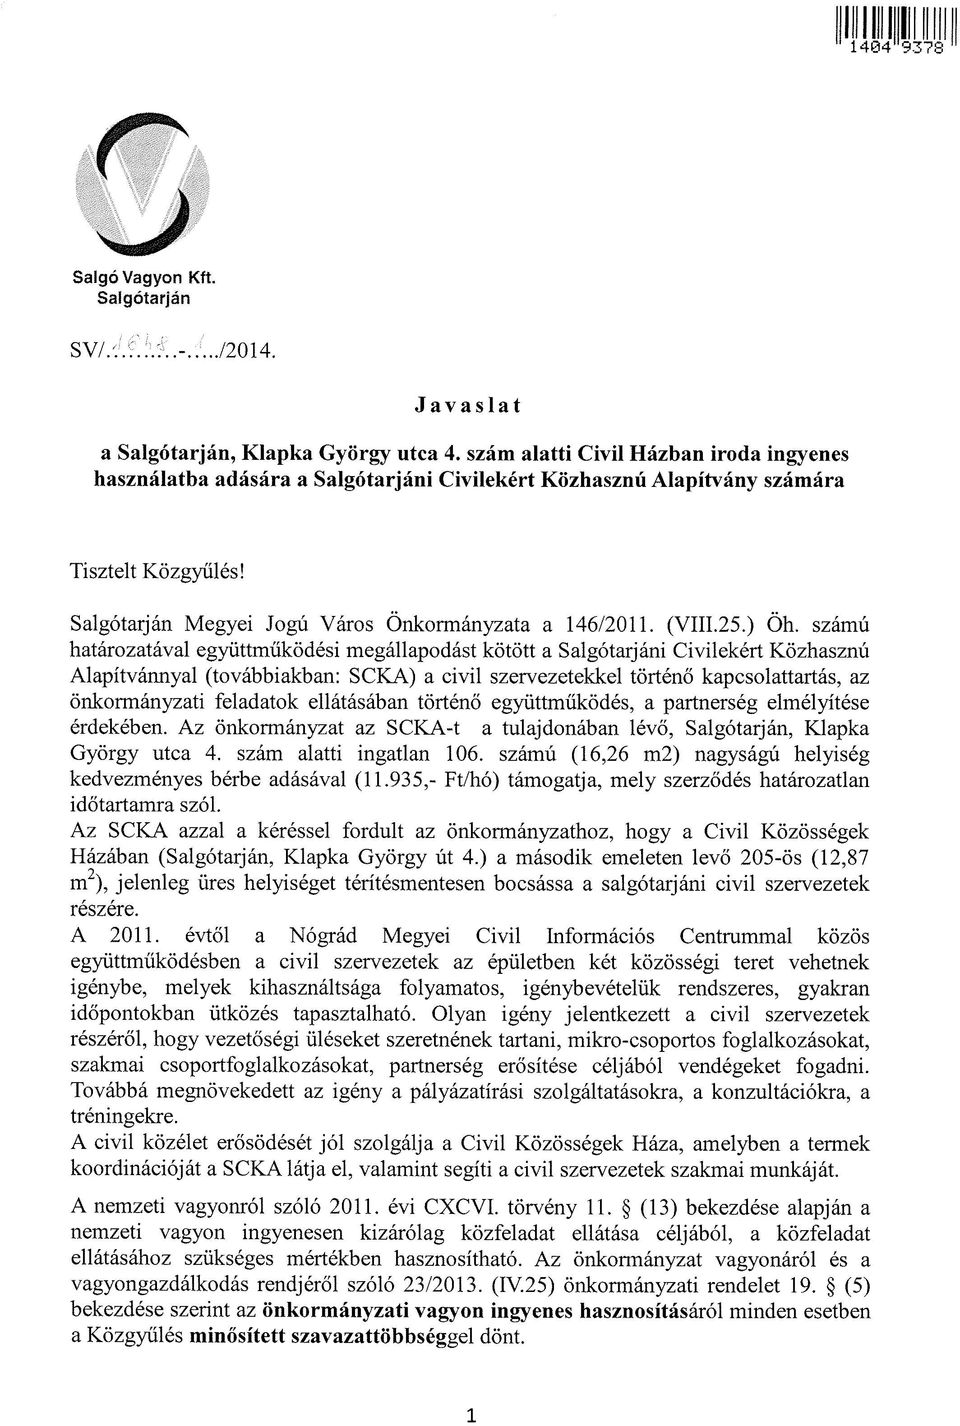 ) Öh. számú határozatával együttműködési megállapodást kötött a Salgótarjáni Civilekért Közhasznú Alapítvánnyal (továbbiakban: SCKA) a civil szervezetekkel történő kapcsolattartás, az önkormányzati